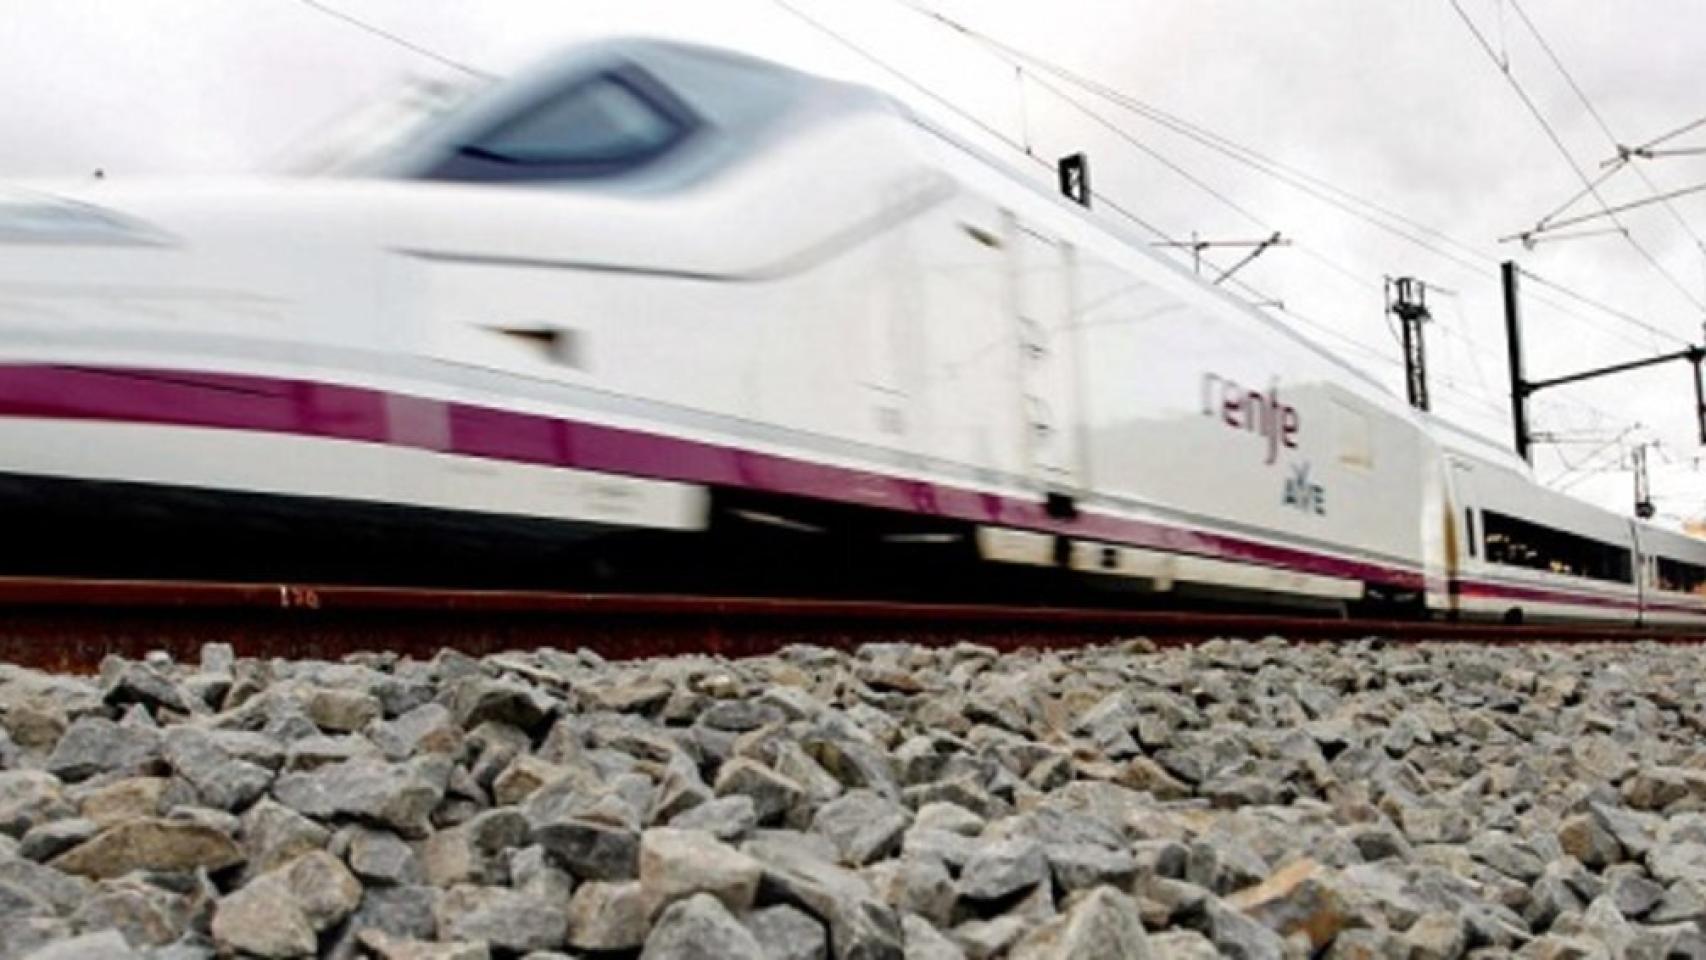 España, líder mundial en ferrocarriles de última generación con 50 proyectos en el exterior